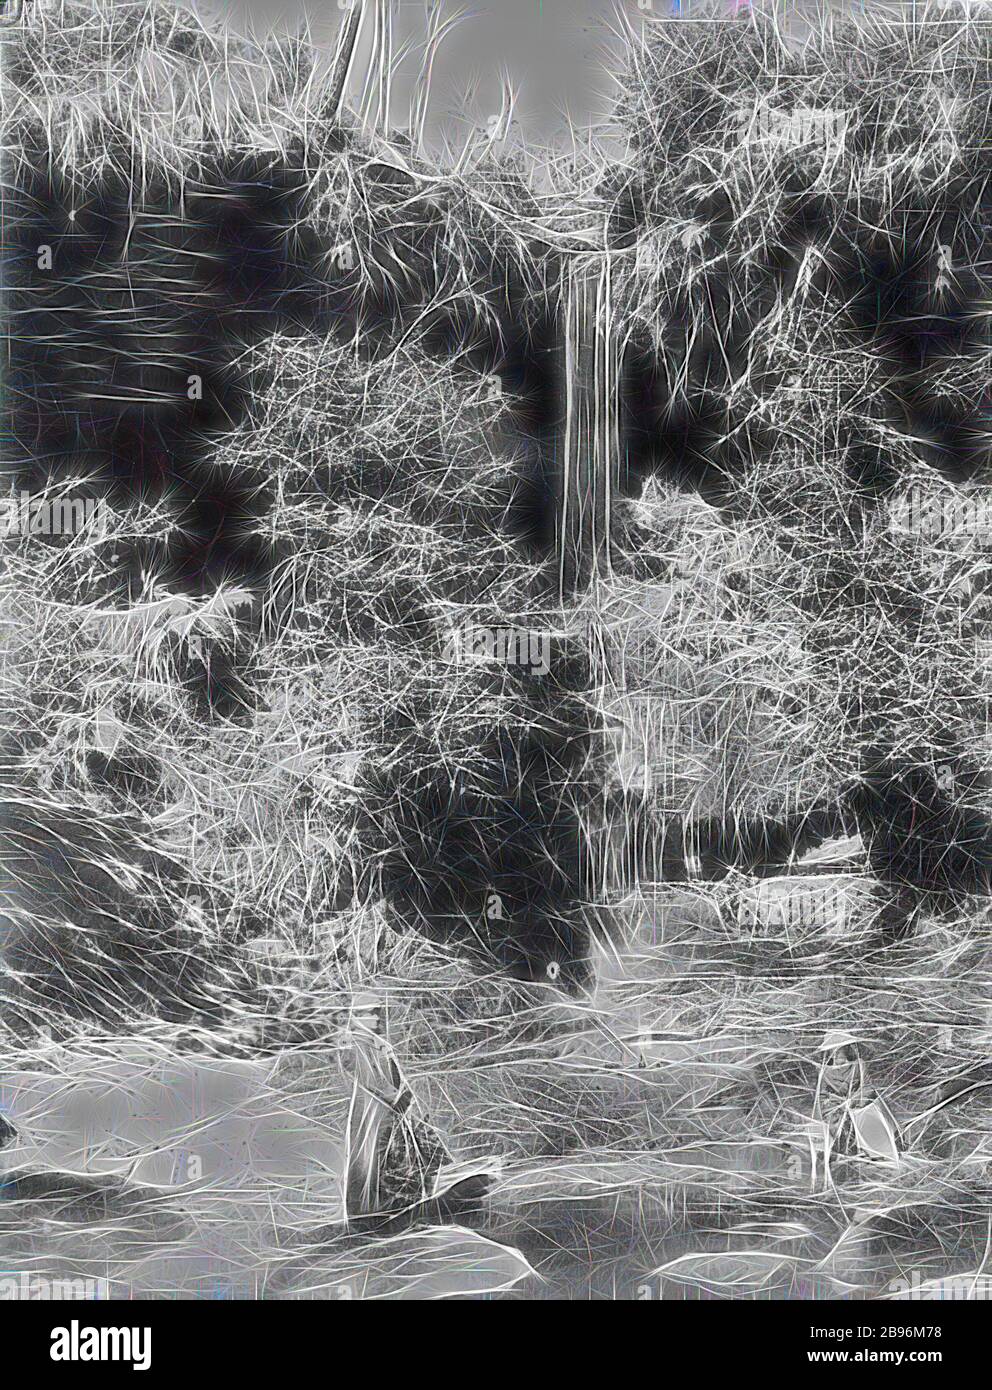 Negativ - Mount Victoria, New South Wales, um das Jahr 1880, zwei Frauen und ihre Hunde am Fairy Dell Wasserfall., von Gibon neu vorgestellt, Design von warmem, fröhlichem Leuchten von Helligkeit und Lichtstrahlen. Klassische Kunst mit moderner Note neu erfunden. Fotografie, inspiriert vom Futurismus, die dynamische Energie moderner Technologie, Bewegung, Geschwindigkeit und Kultur revolutionieren. Stockfoto